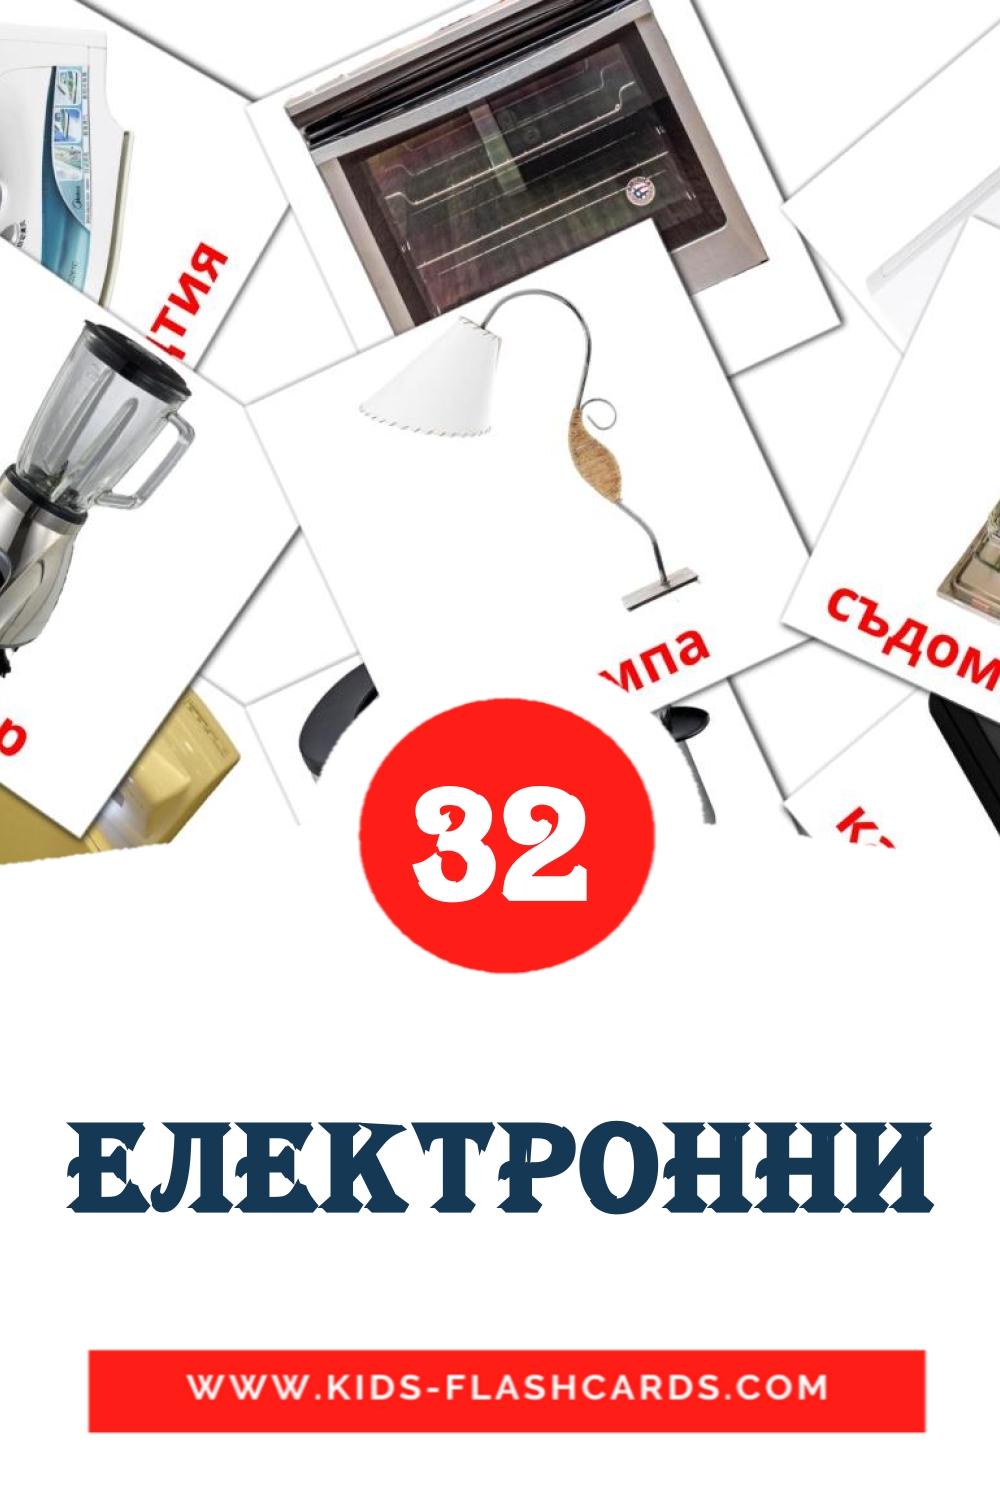 Електронни на болгарском для Детского Сада (32 карточки)